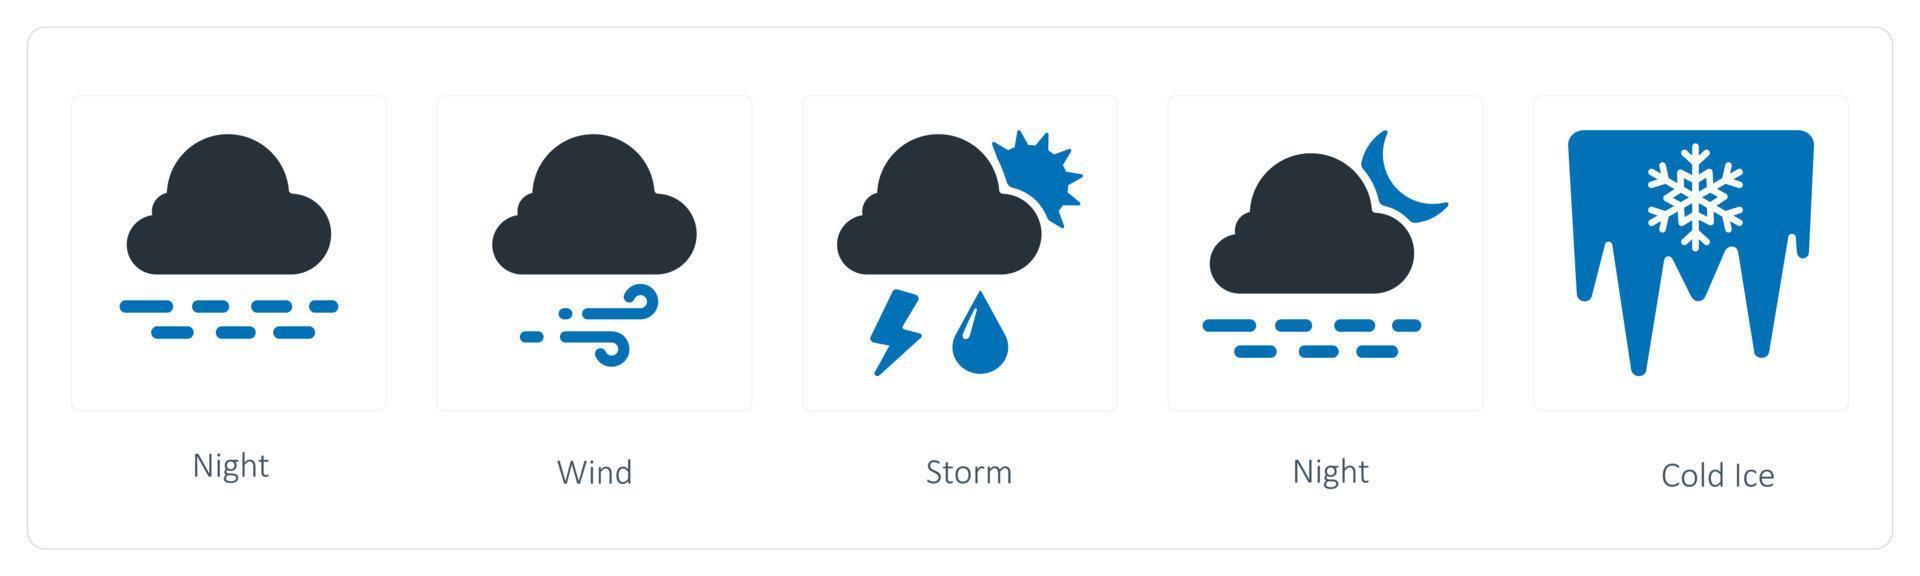 en uppsättning av 5 väder ikoner sådan som natt, vind och storm vektor